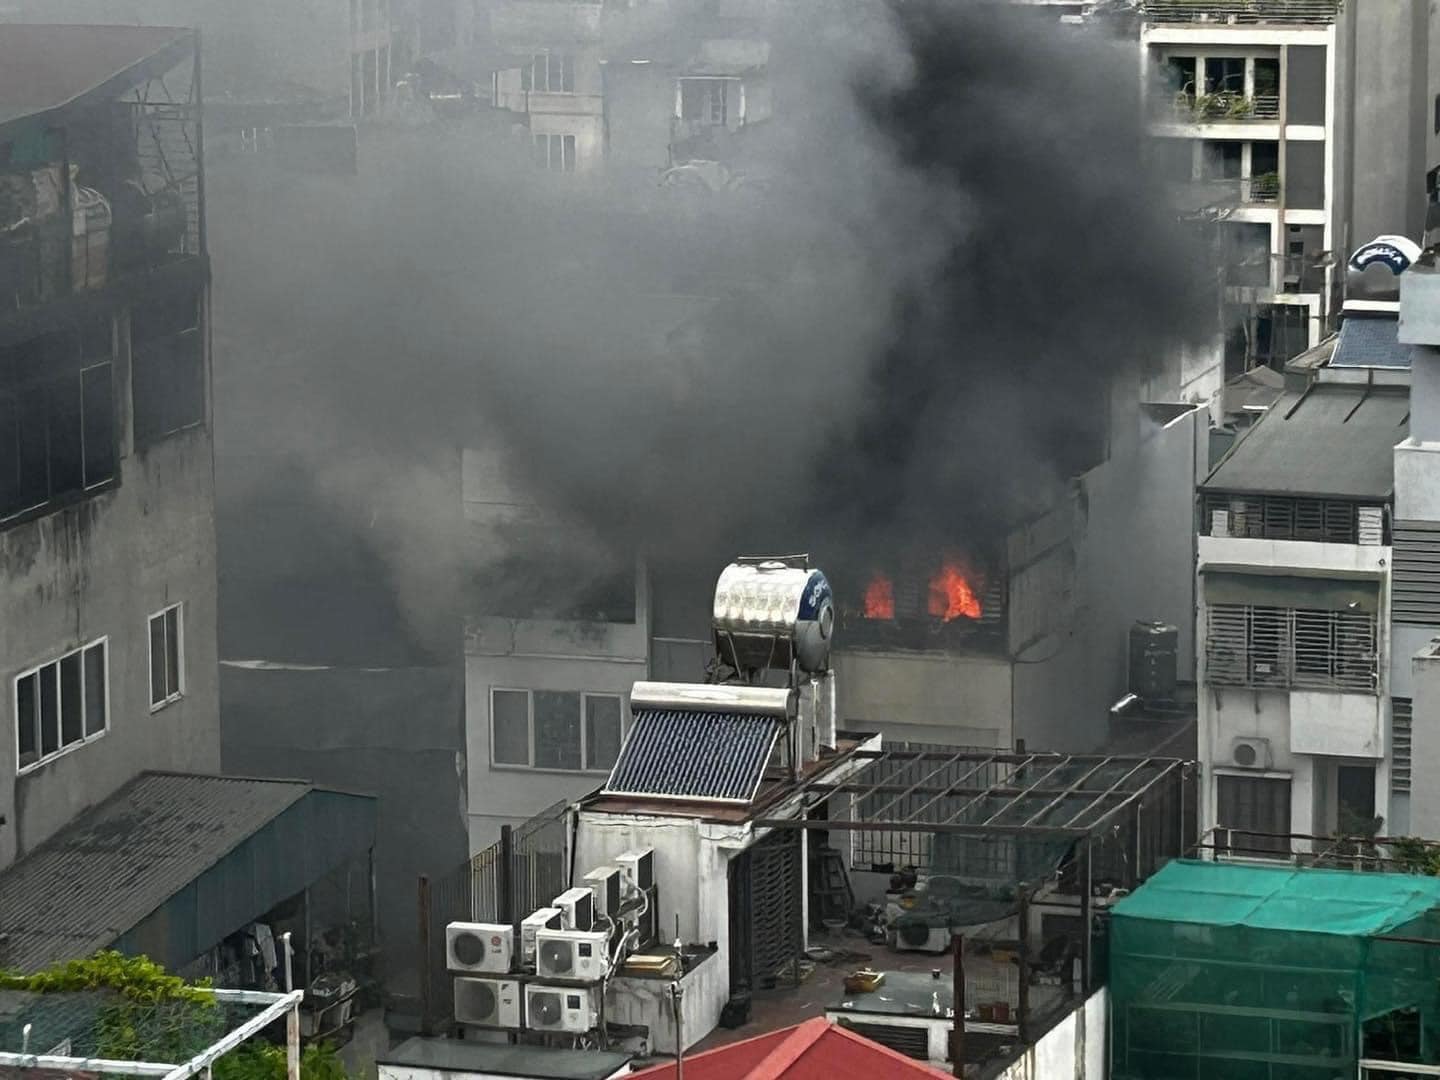 Thêm 1 đám cháy chung cư Hà Nội, khói lớn bao trùm, bất cẩn từ việc đun nước sôi - ảnh 2